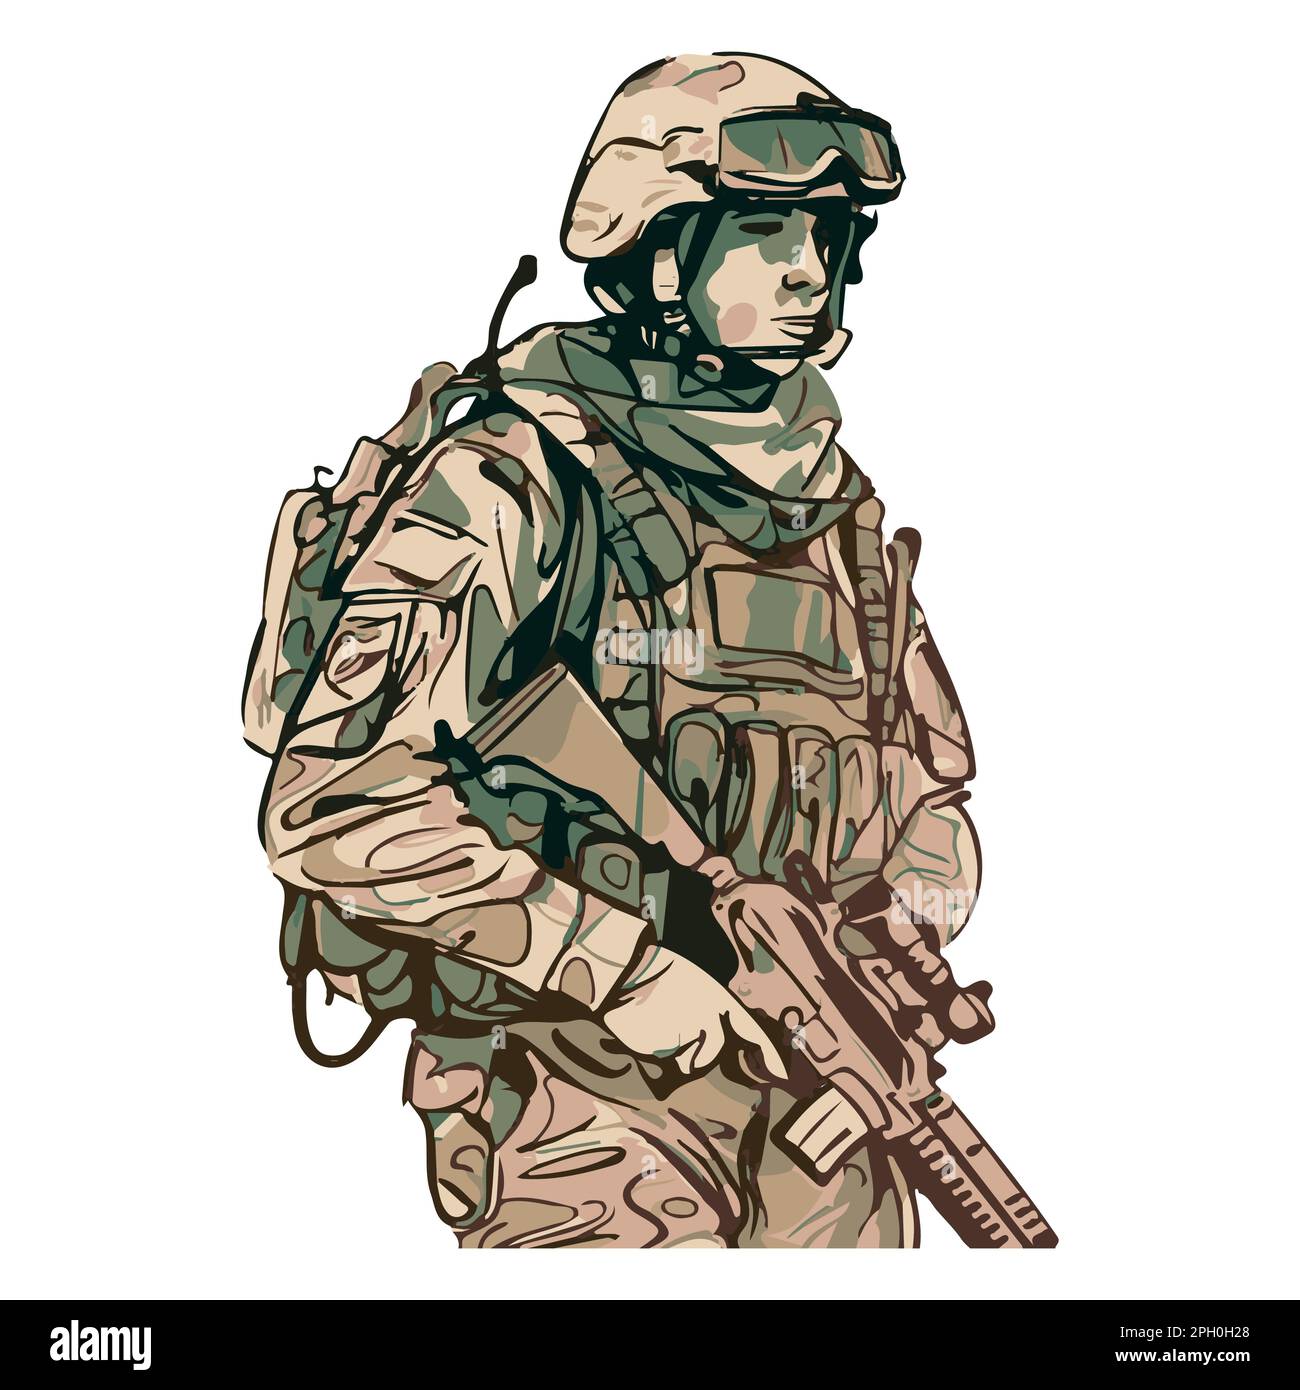 Militärinfanterie. Cartoon-Soldat, isolierte Zeichnung. Vektorkunst der Armee. Mann in Uniform Stock Vektor